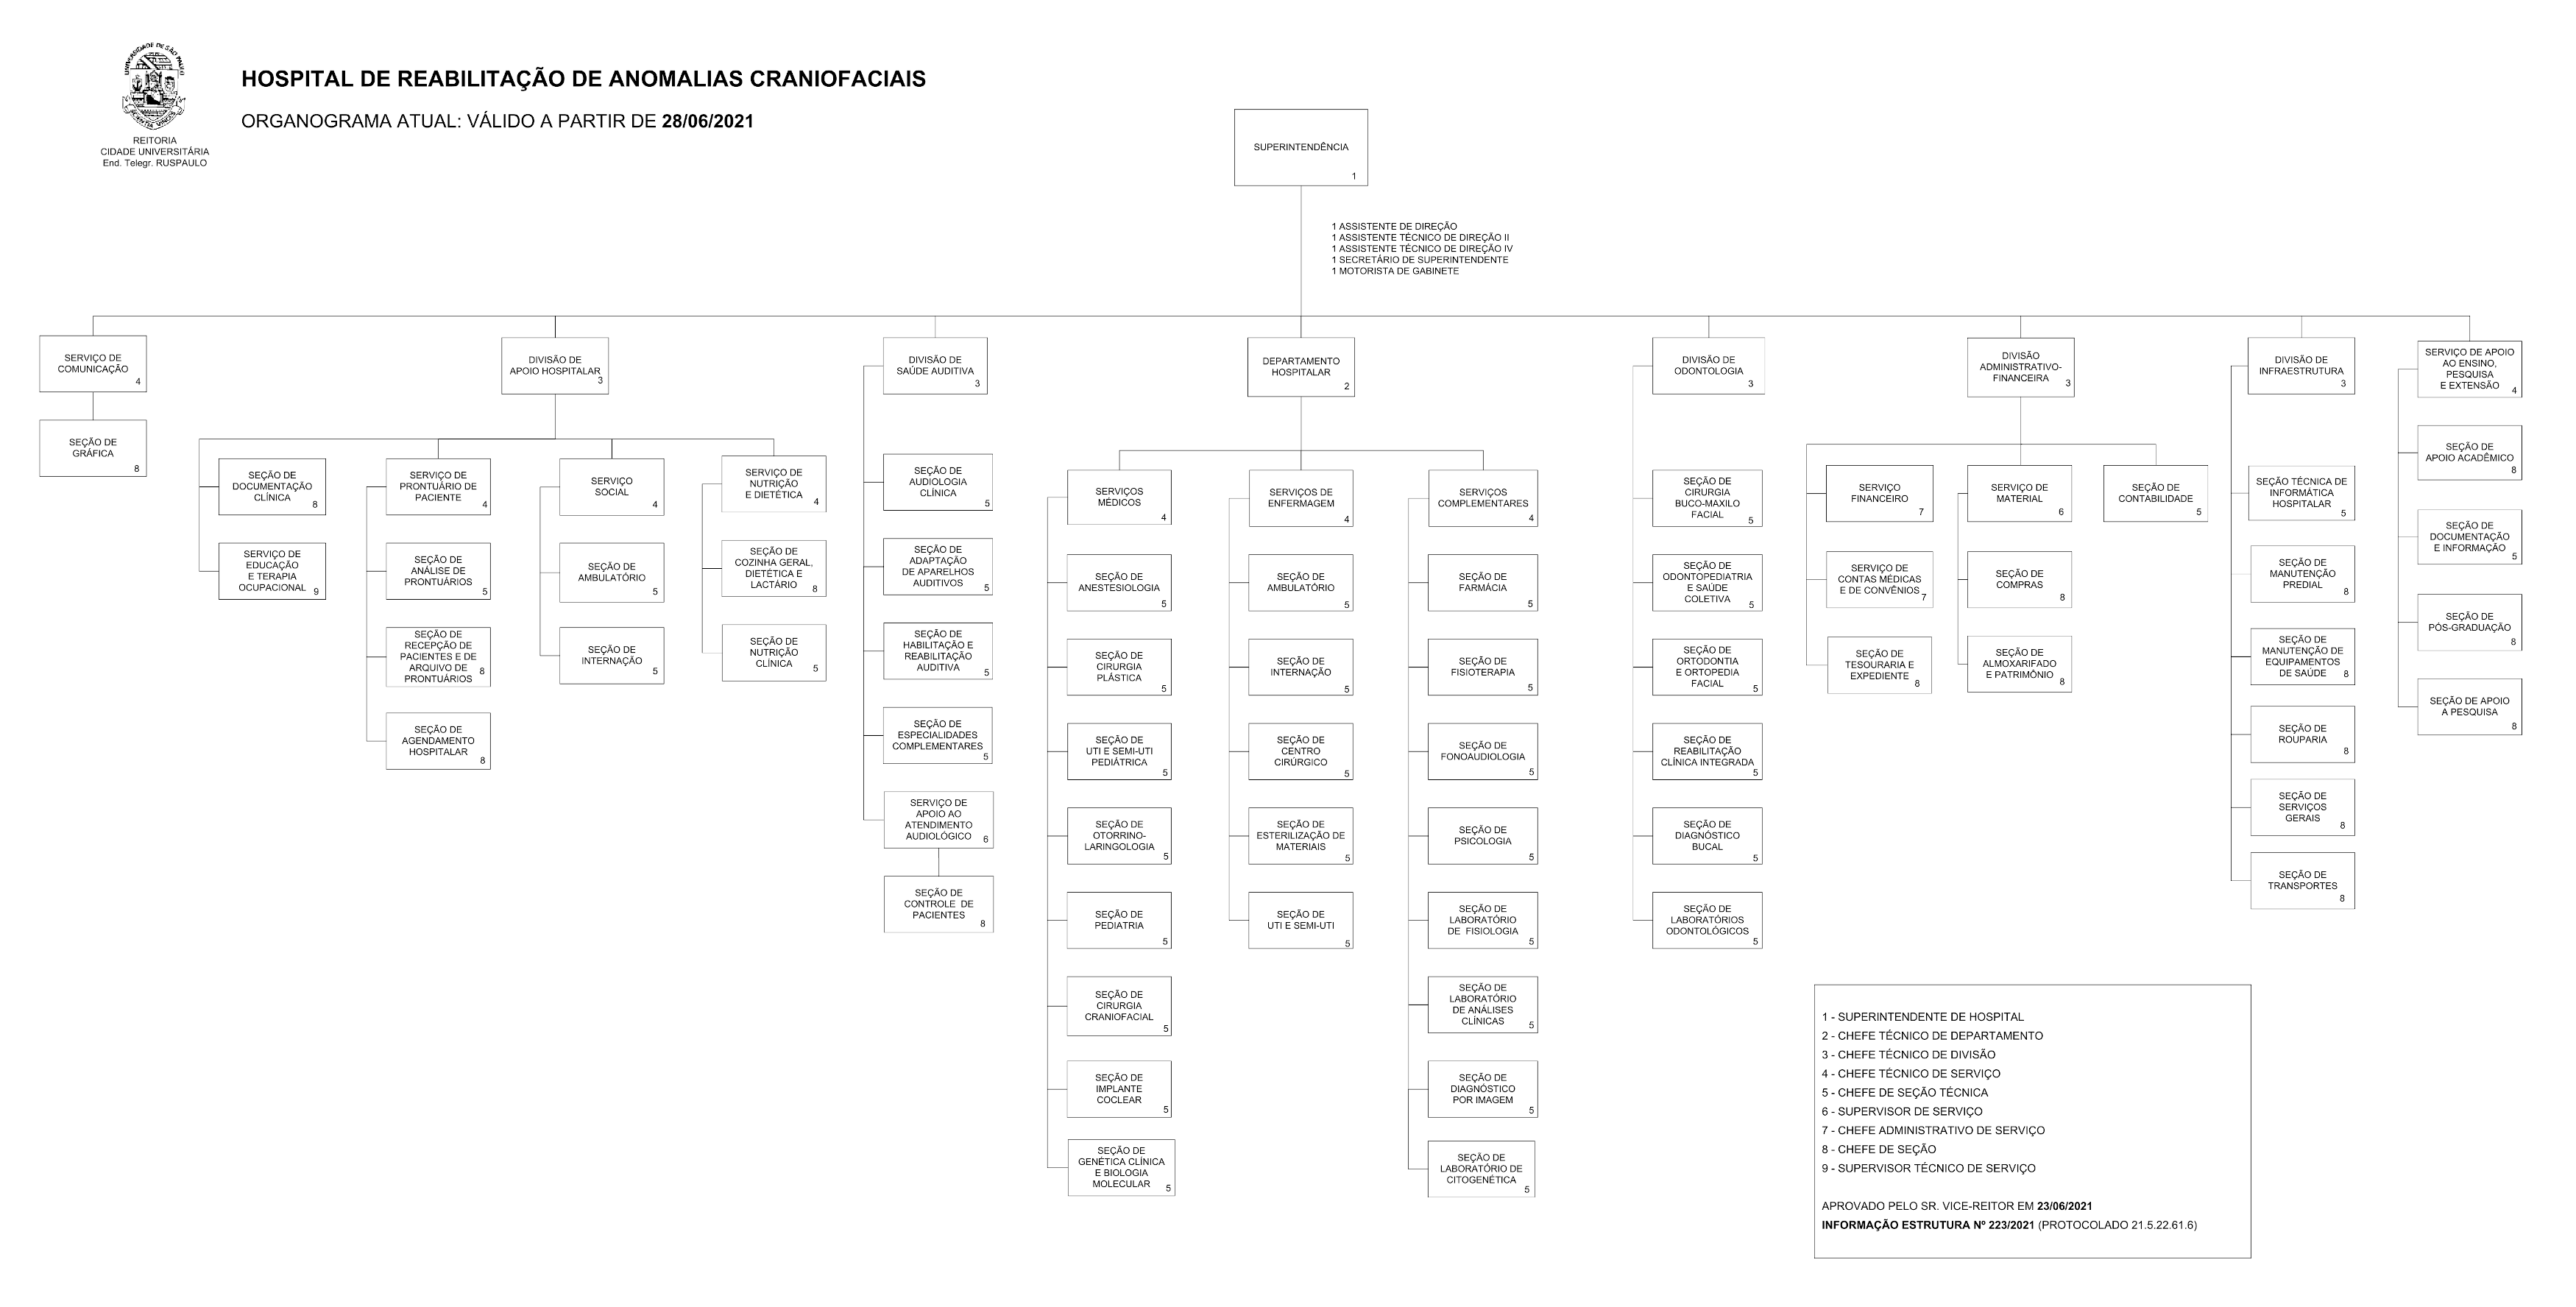 clique para expandir a visualização do organograma atual do HRAC/USP.